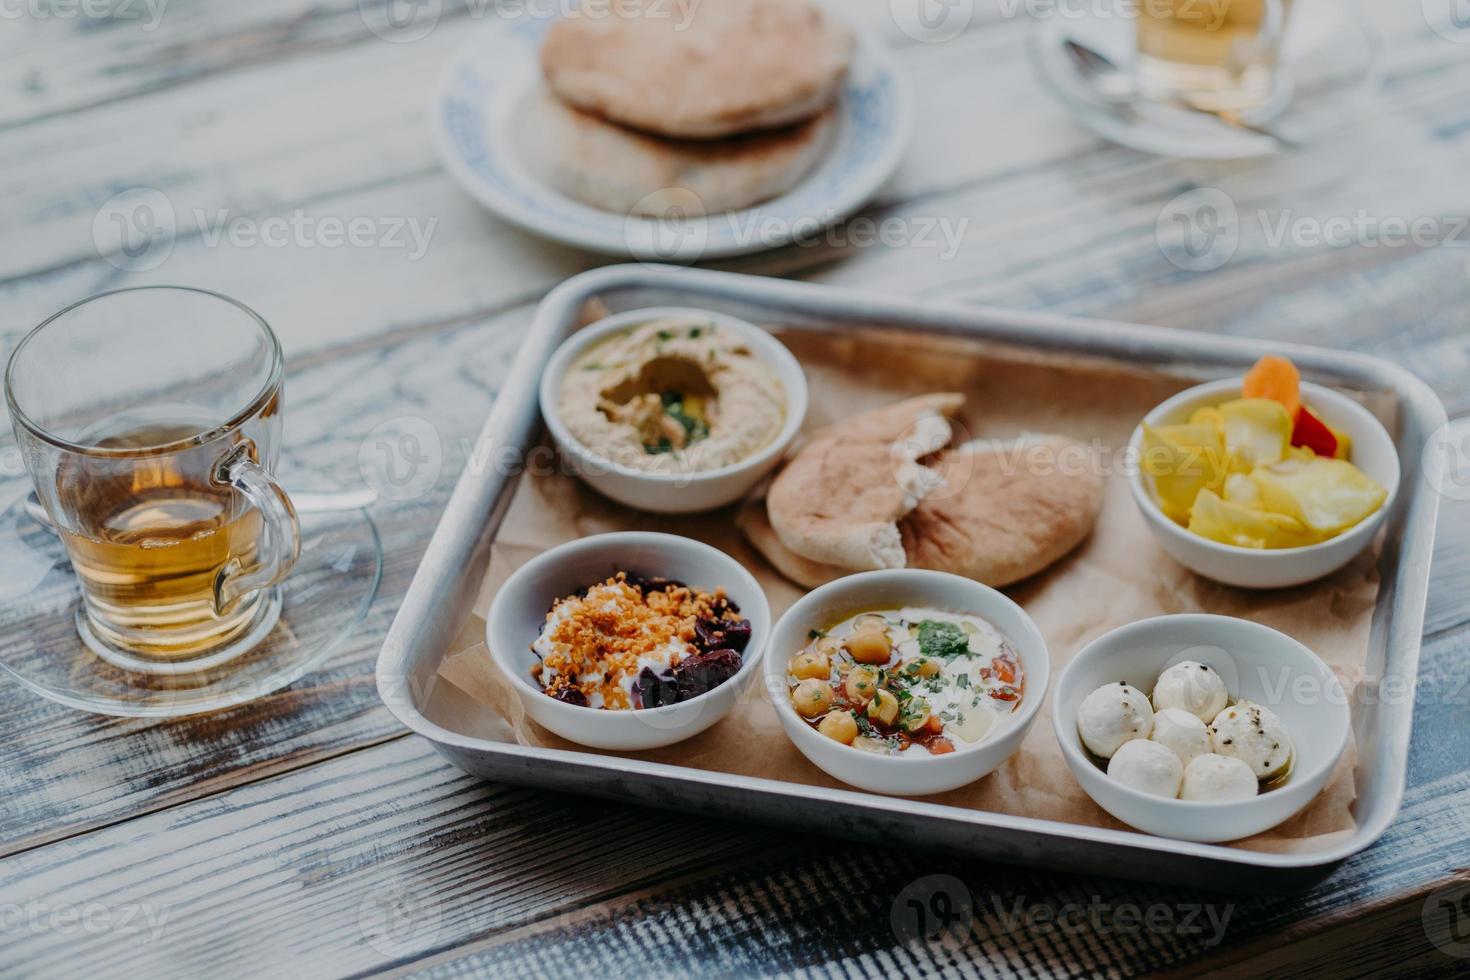 immagine aerea del cibo tradizionale israeliano sul vassoio. hummus, formaggio di capra domestico, torsolo di pomodoro, barbabietola con spezie, pane pita, bevanda in vetro foto